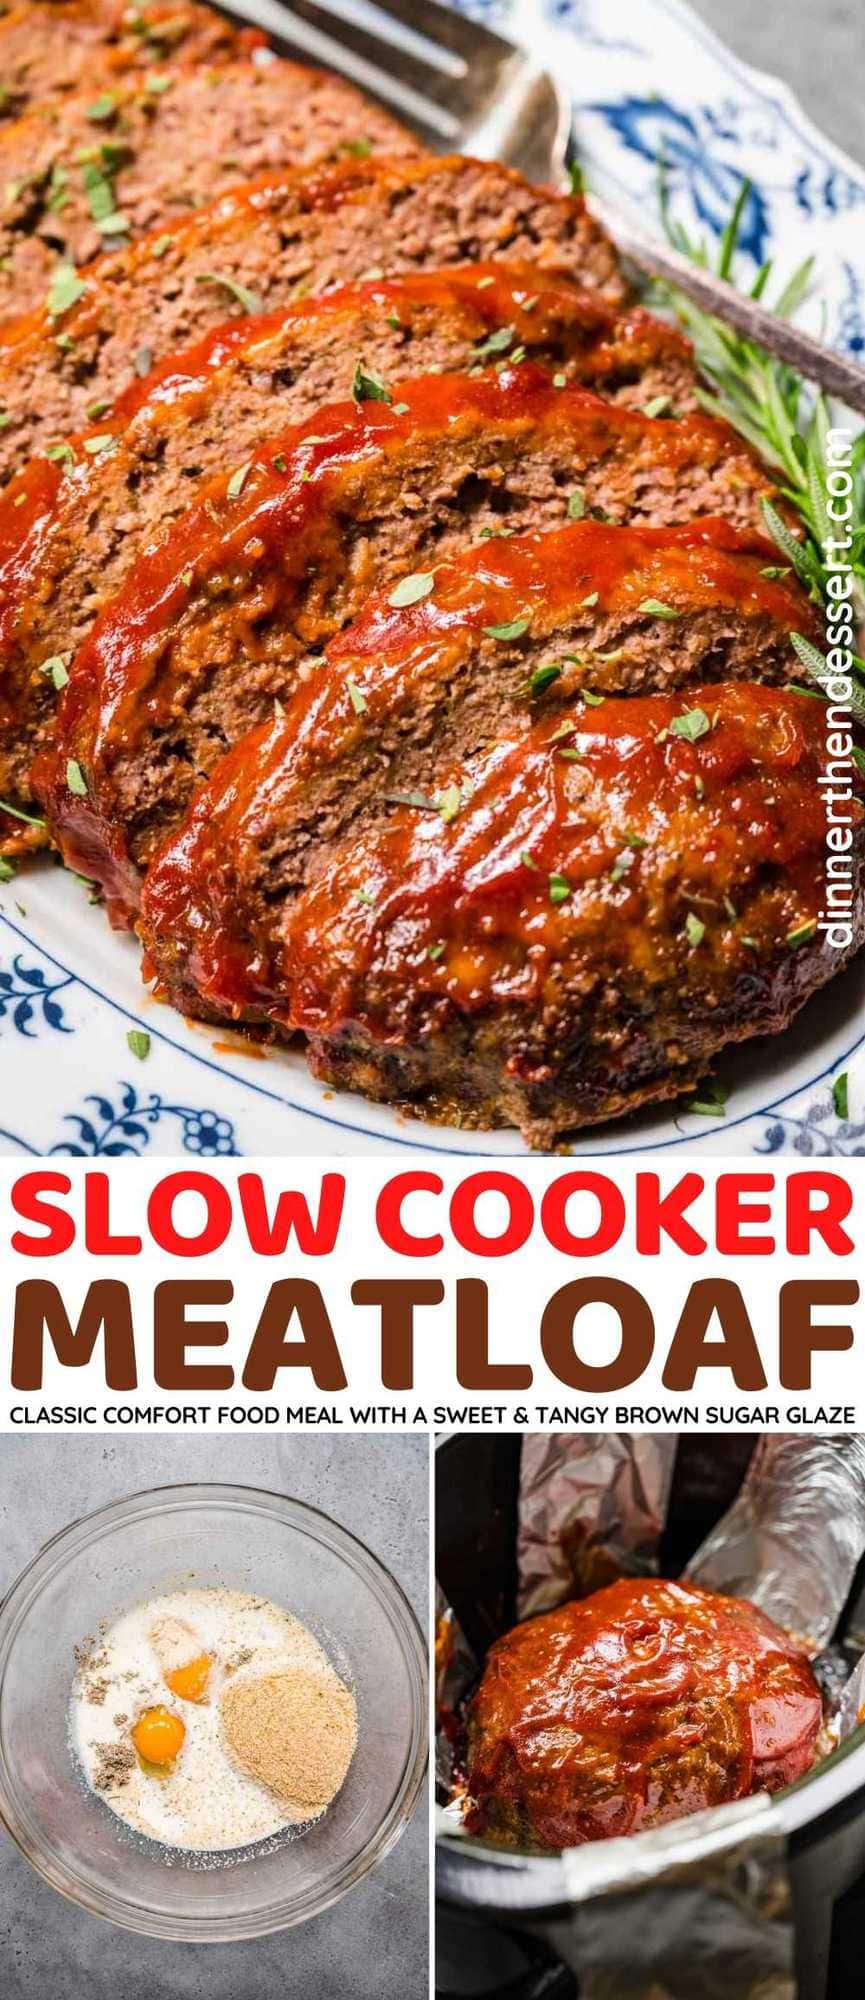 Slow Cooker Meatloaf collage